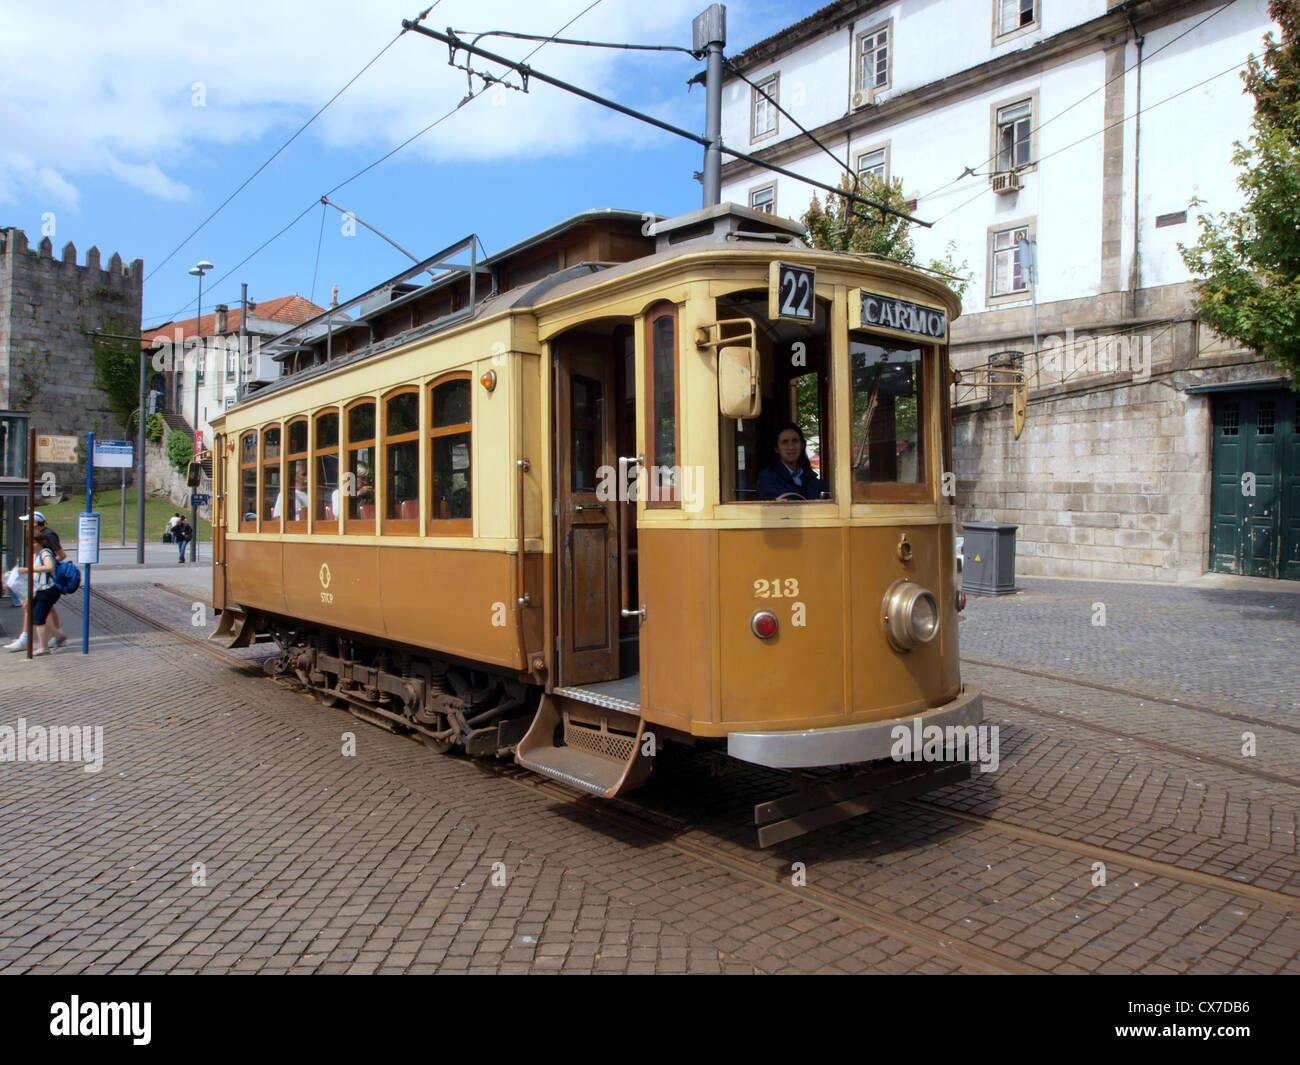 Straßenbahnen in Porto STCP Auto 213 Zeile 22, CARMO Stockfoto